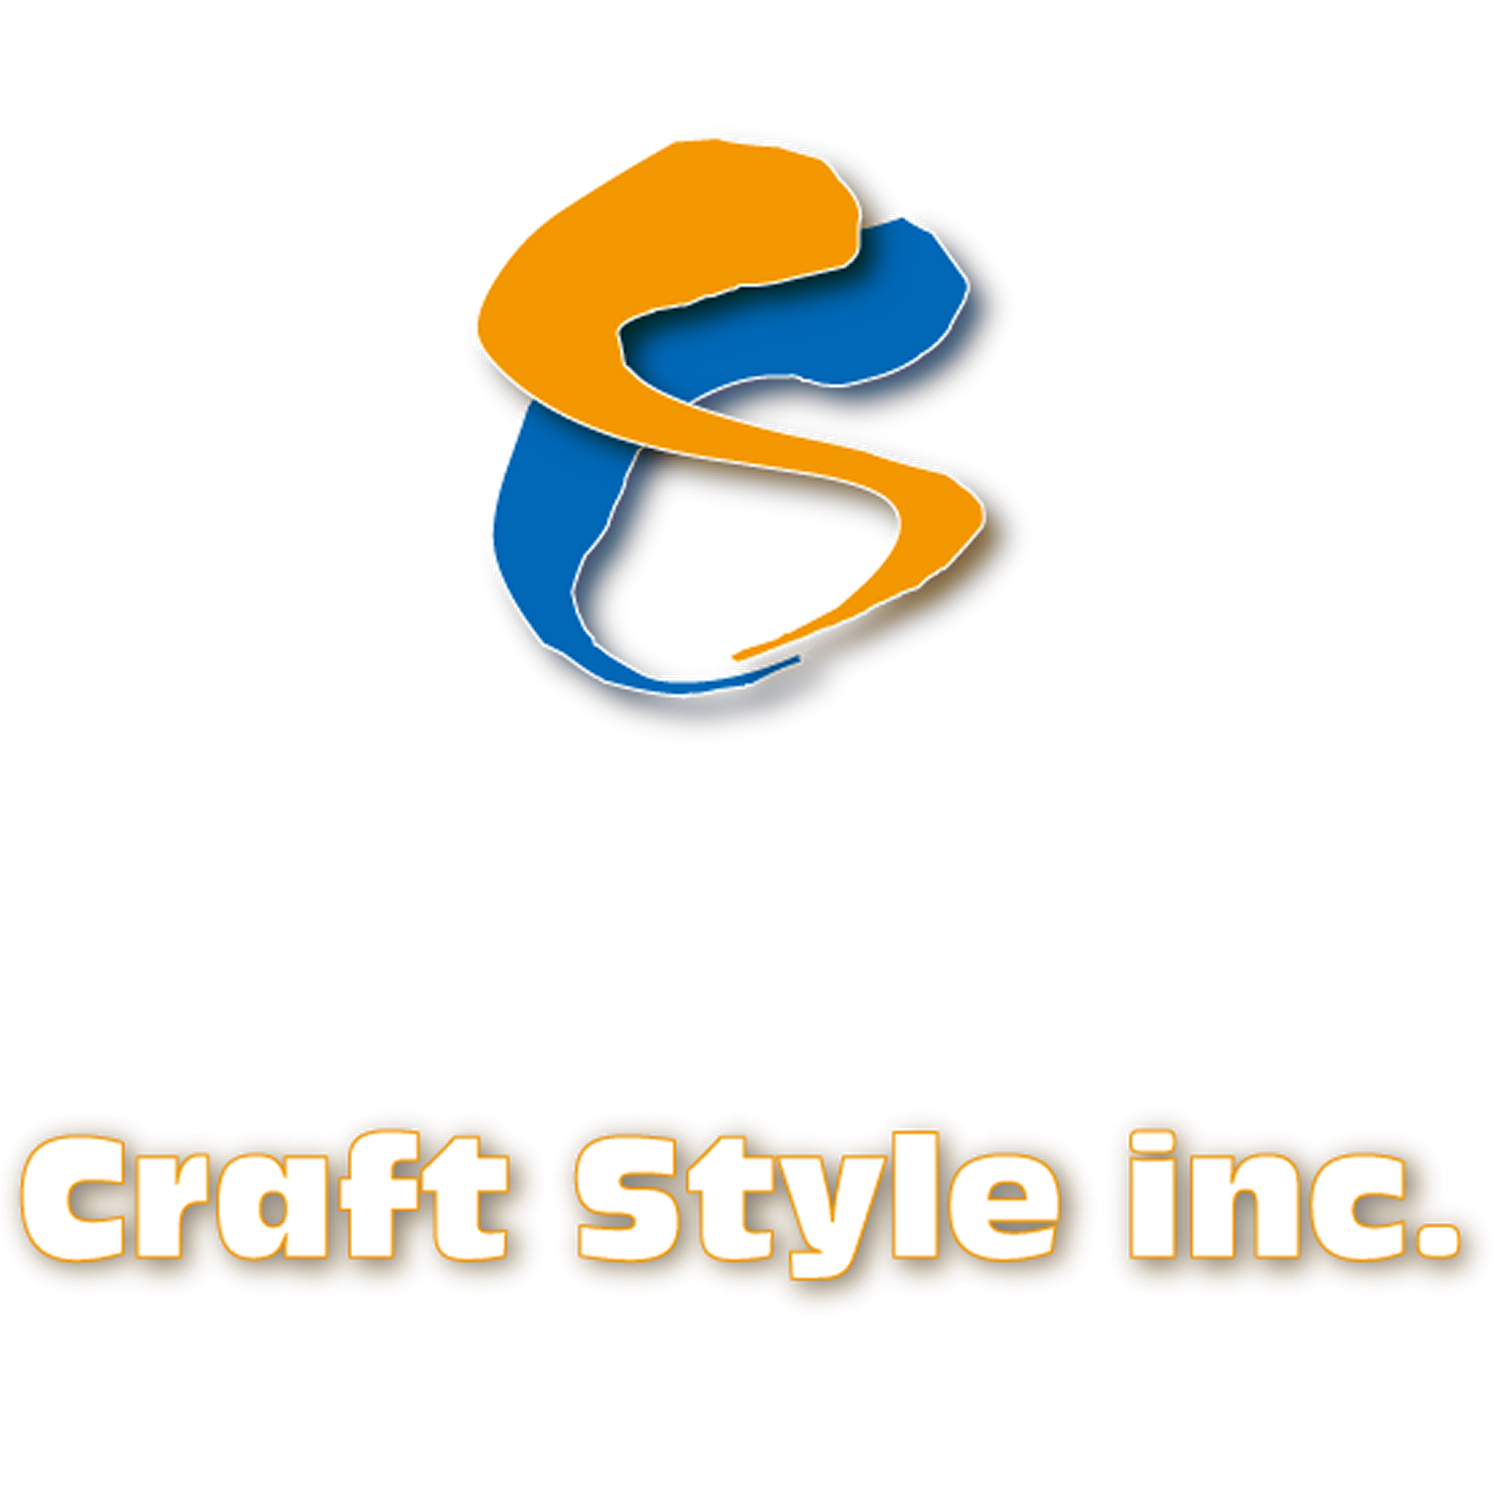 craftStyleInc. WebSite